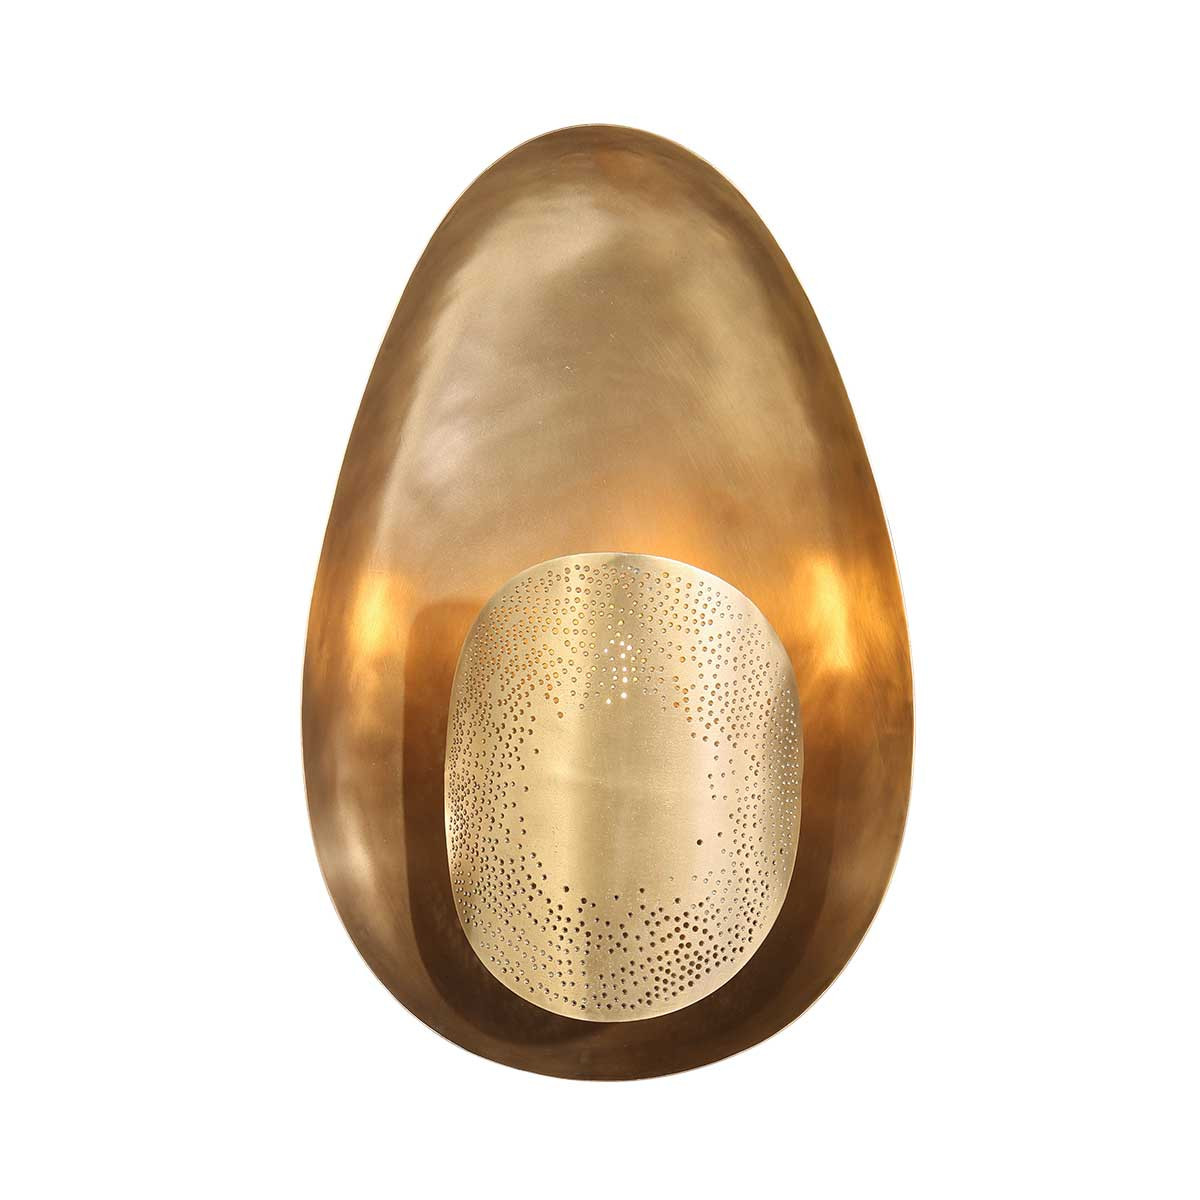 Retro Wandlampe in bronze Anne Gold Home Light & eiförmigem Brass